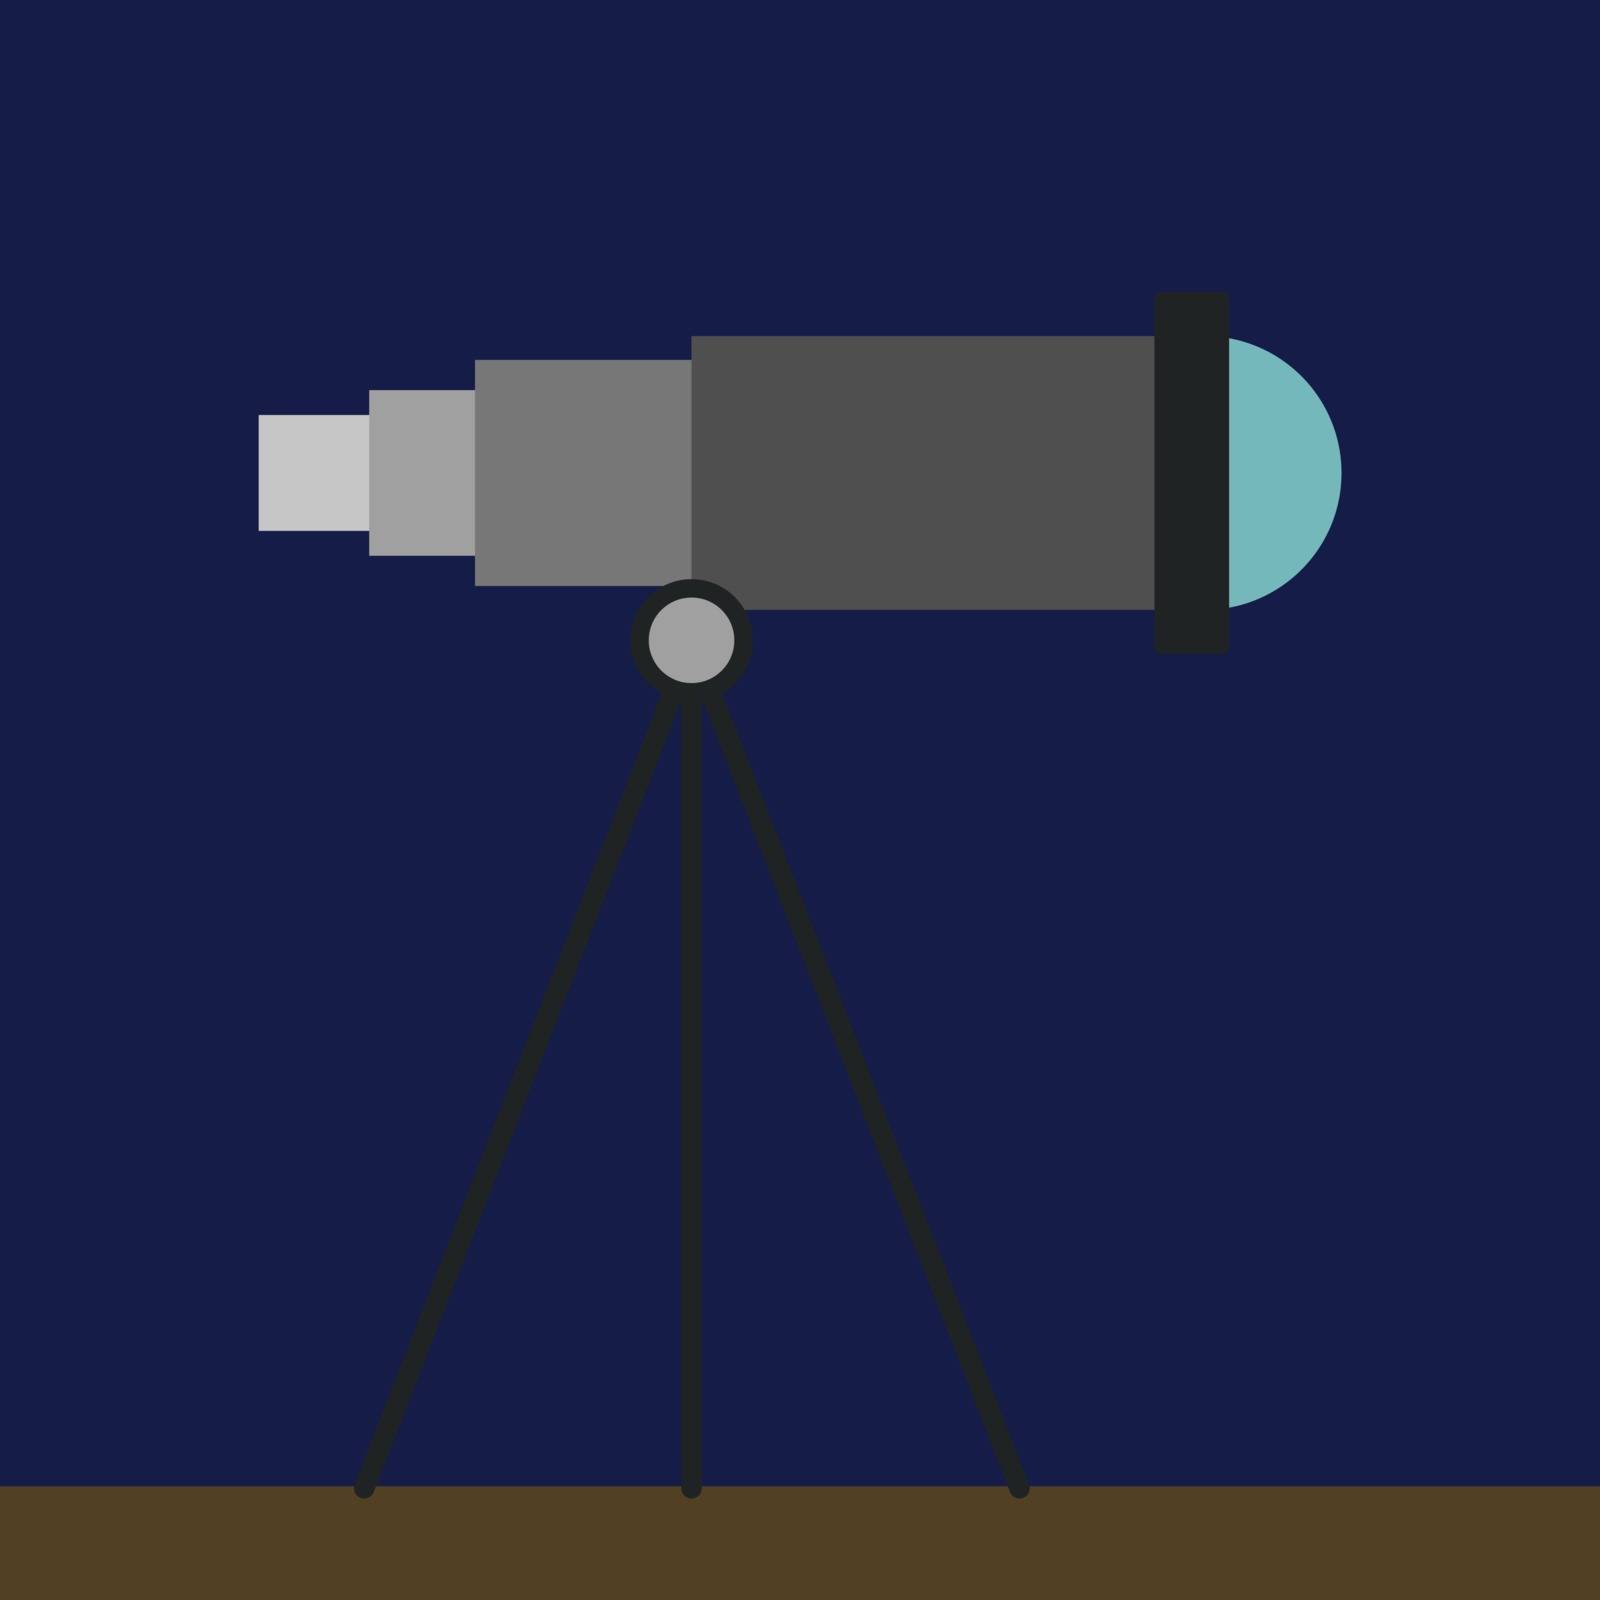 Telescope, illustration, vector on white background. by Morphart